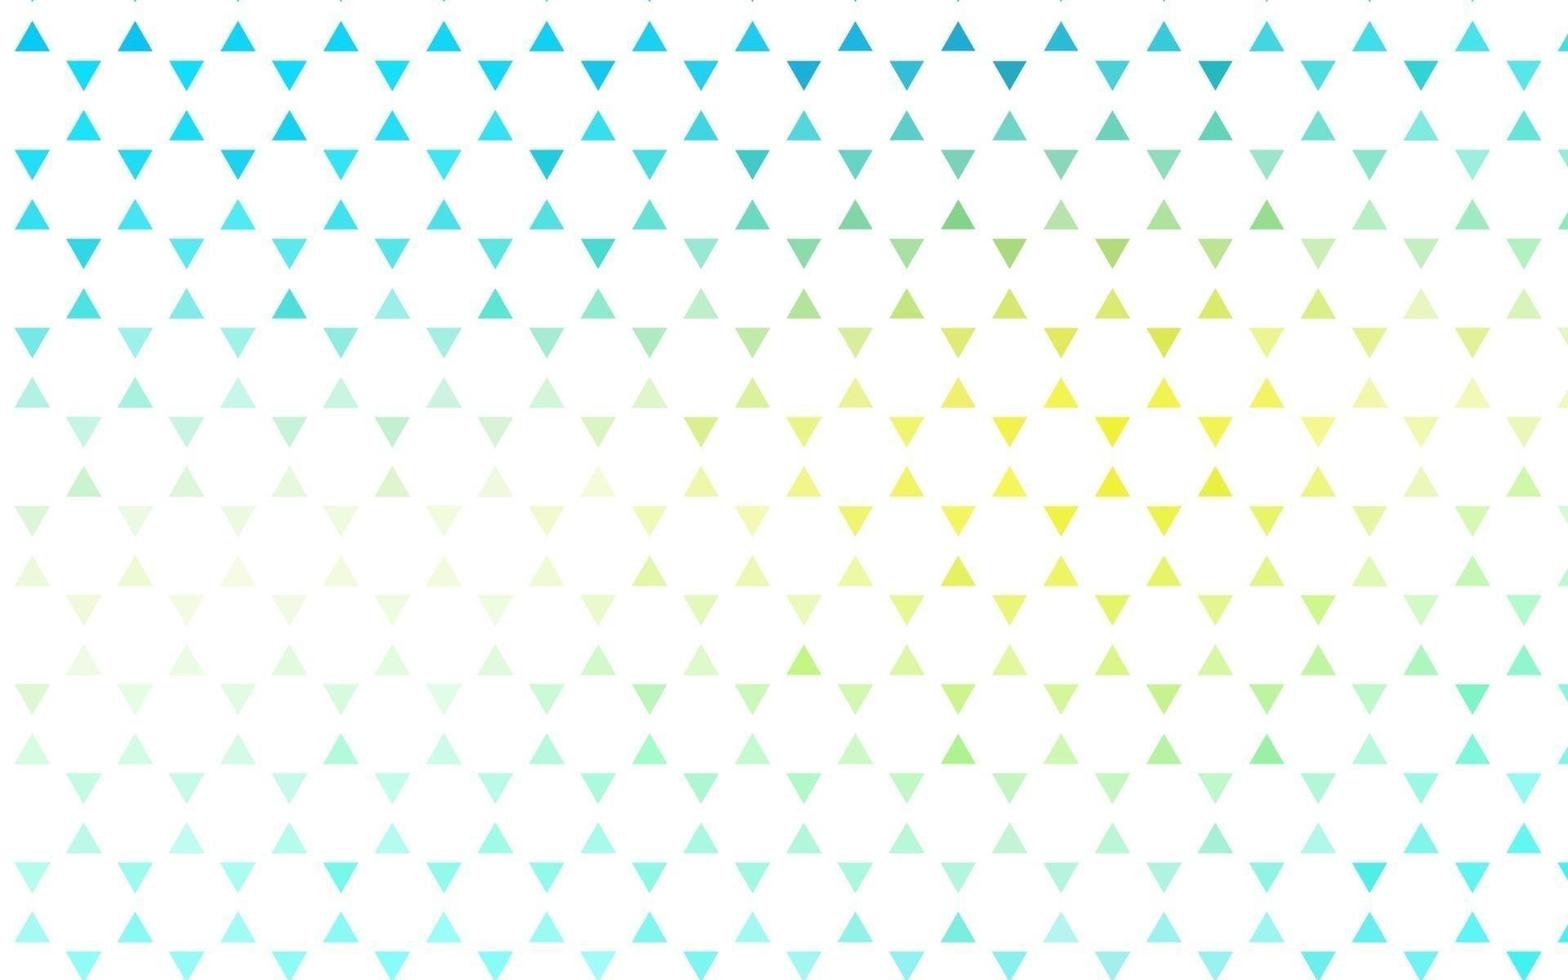 lichtblauwe, gele vector naadloze dekking in veelhoekige stijl.